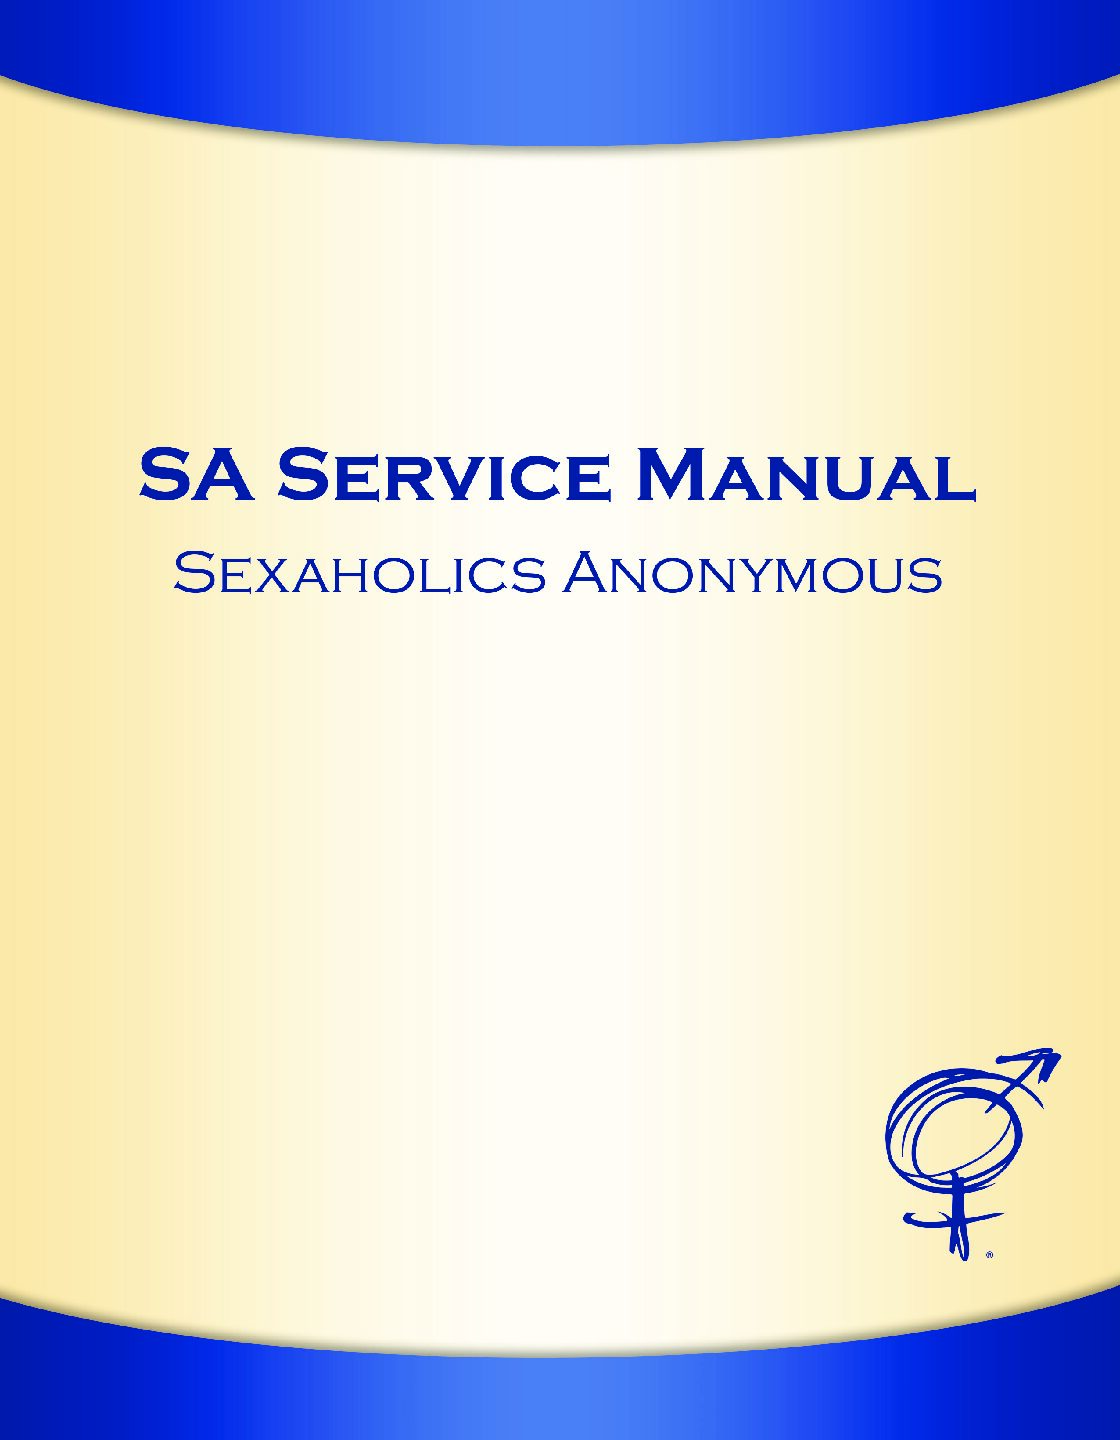 The SA Service Manual